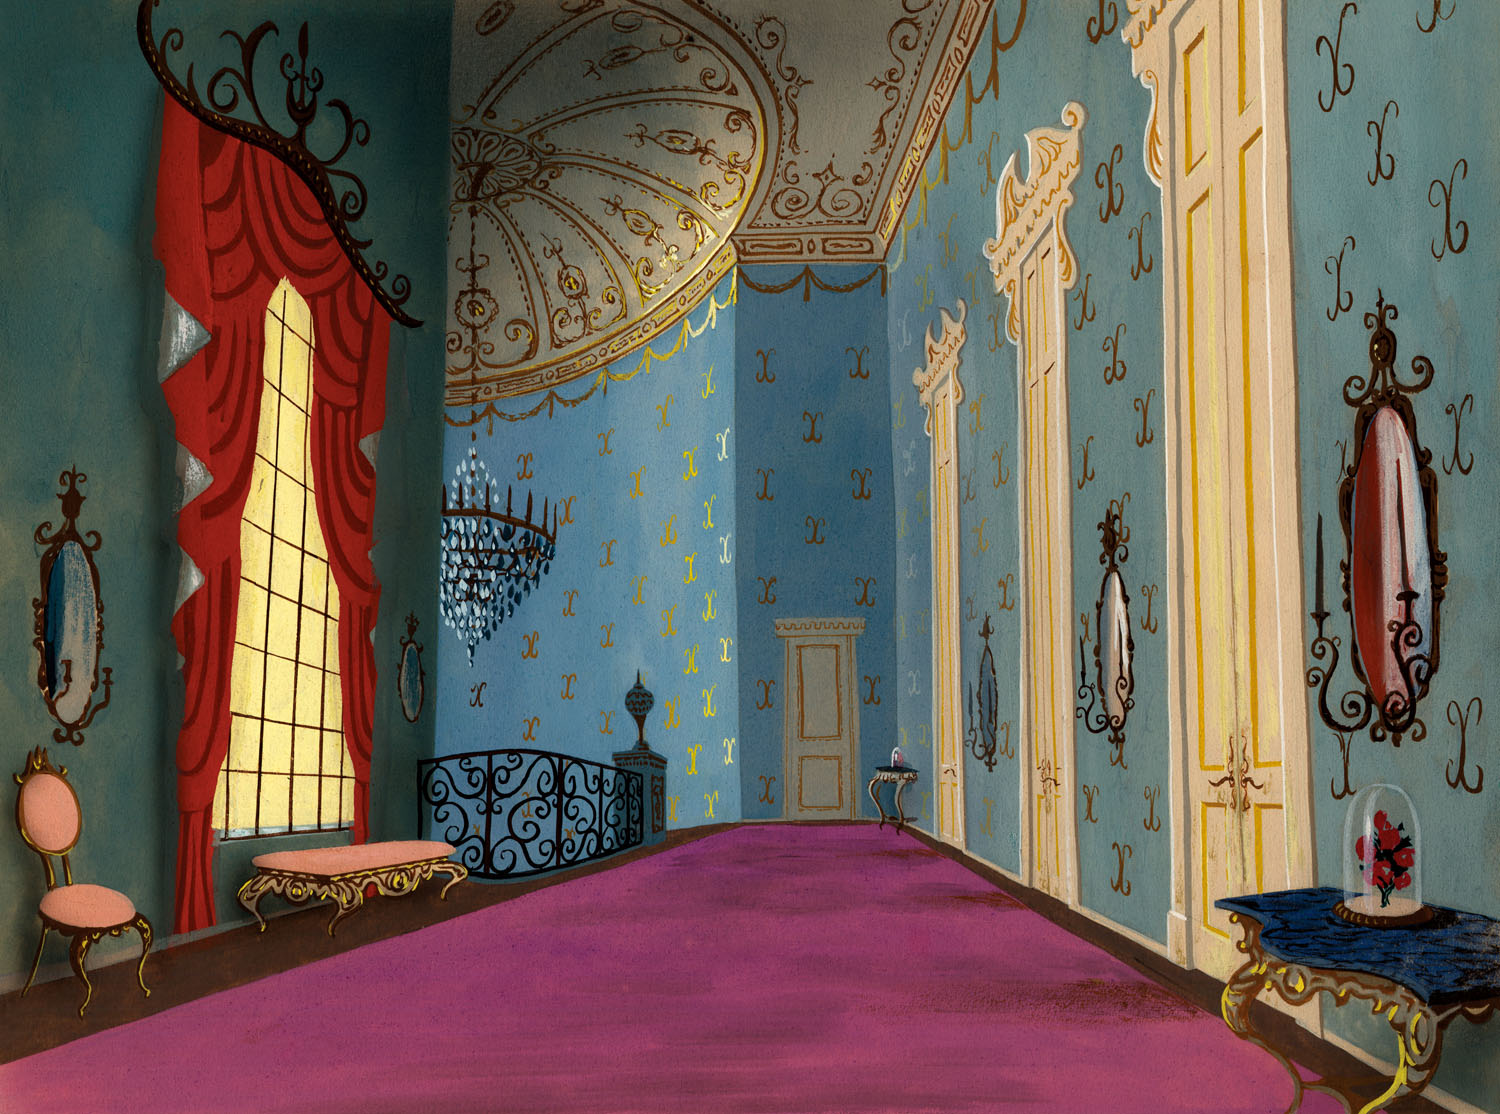 アナと雪の女王２ の背景美術 設定画も掲載 Br ディズニーアニメーション背景美術集 が美しすぎる Pictures